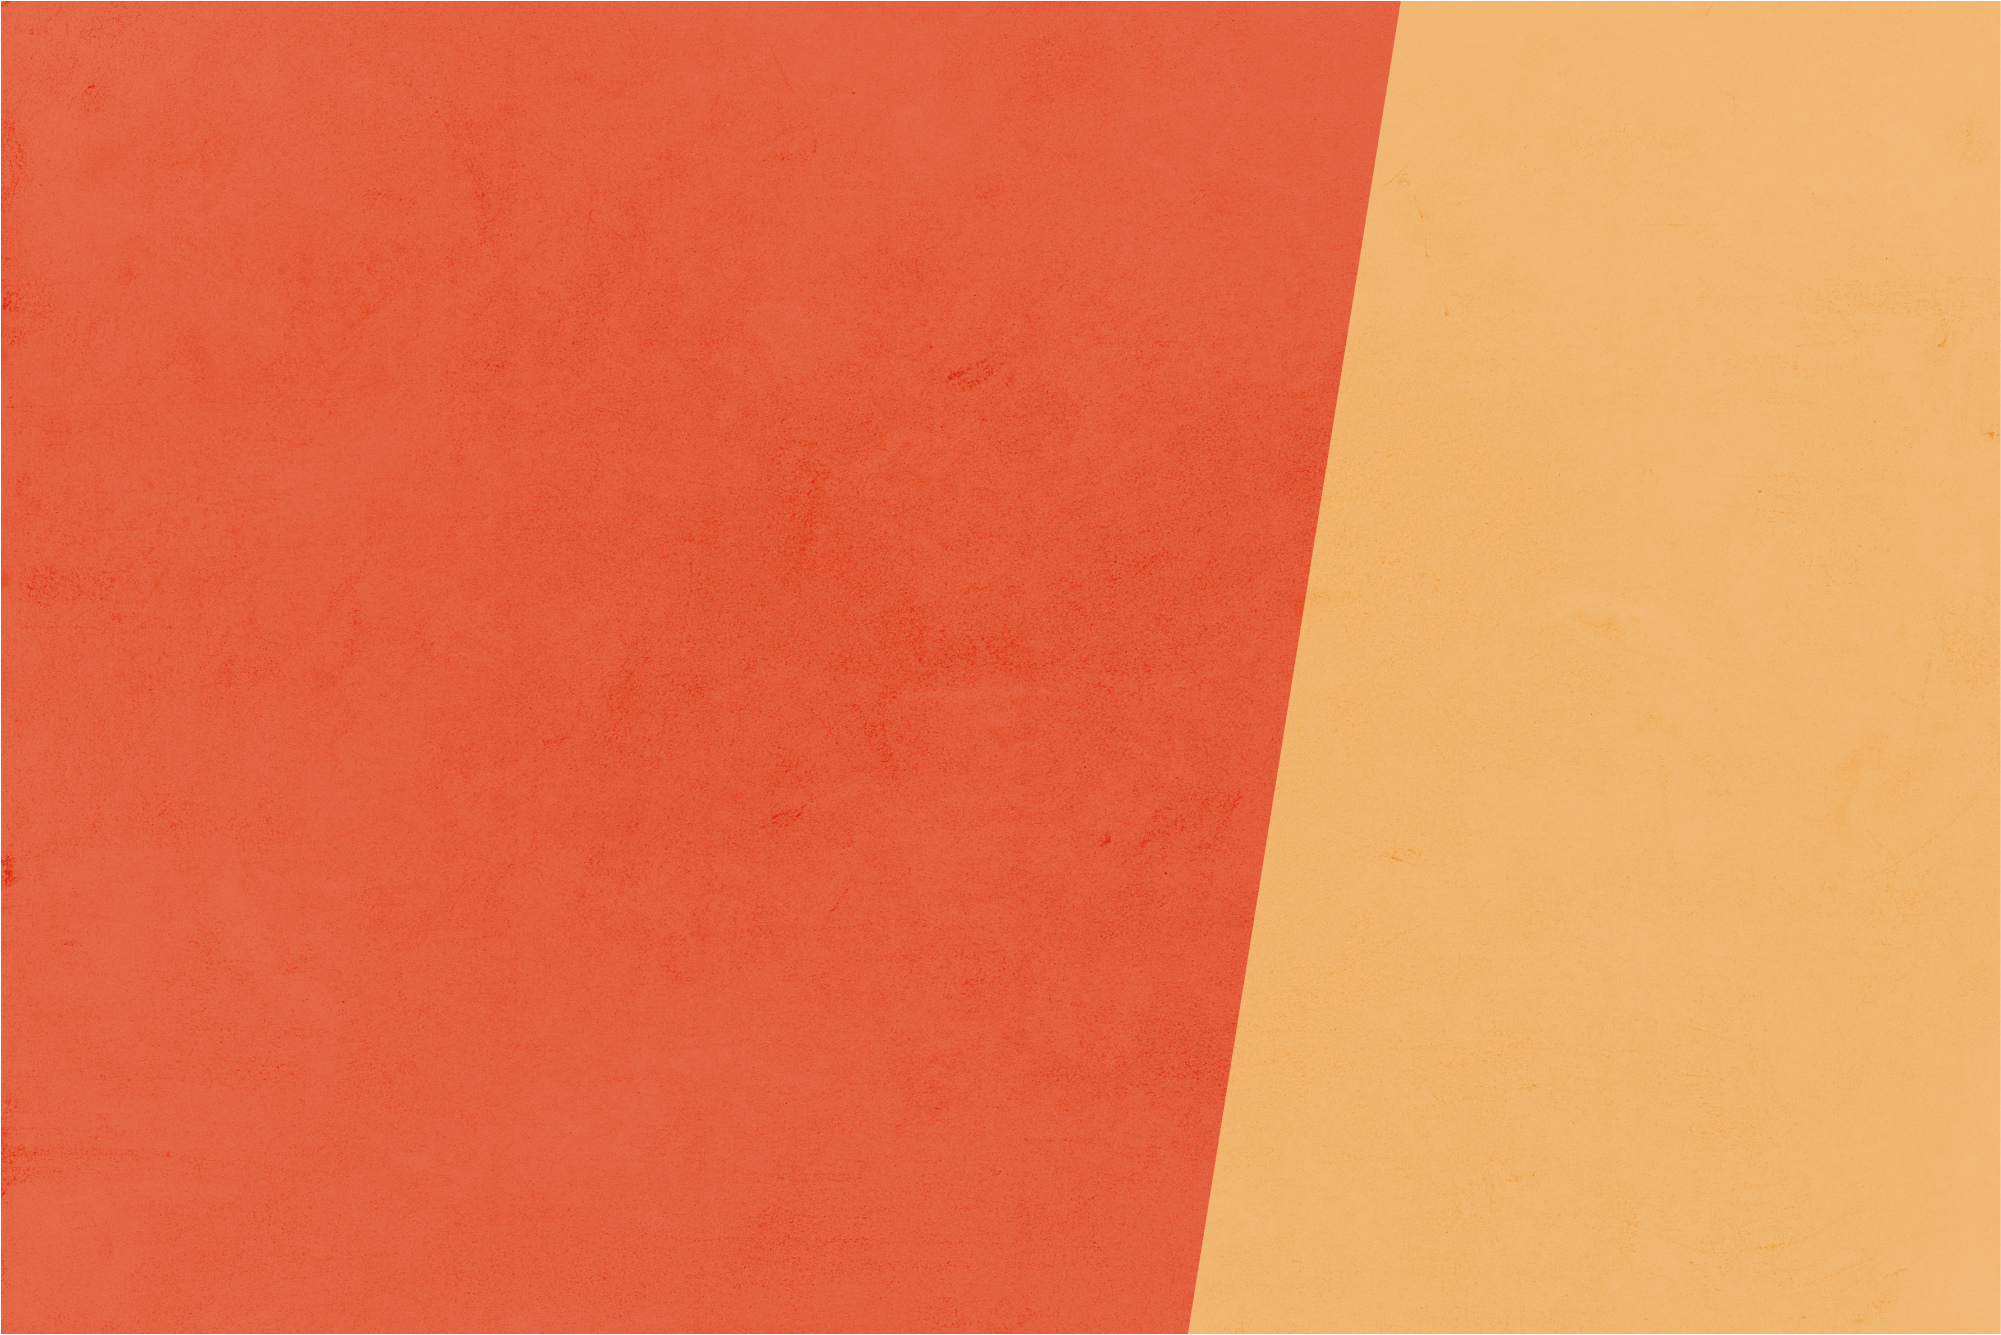 Ein Bild mit der Farbkombination Leidenschaftliches Orange und Zartes Beige